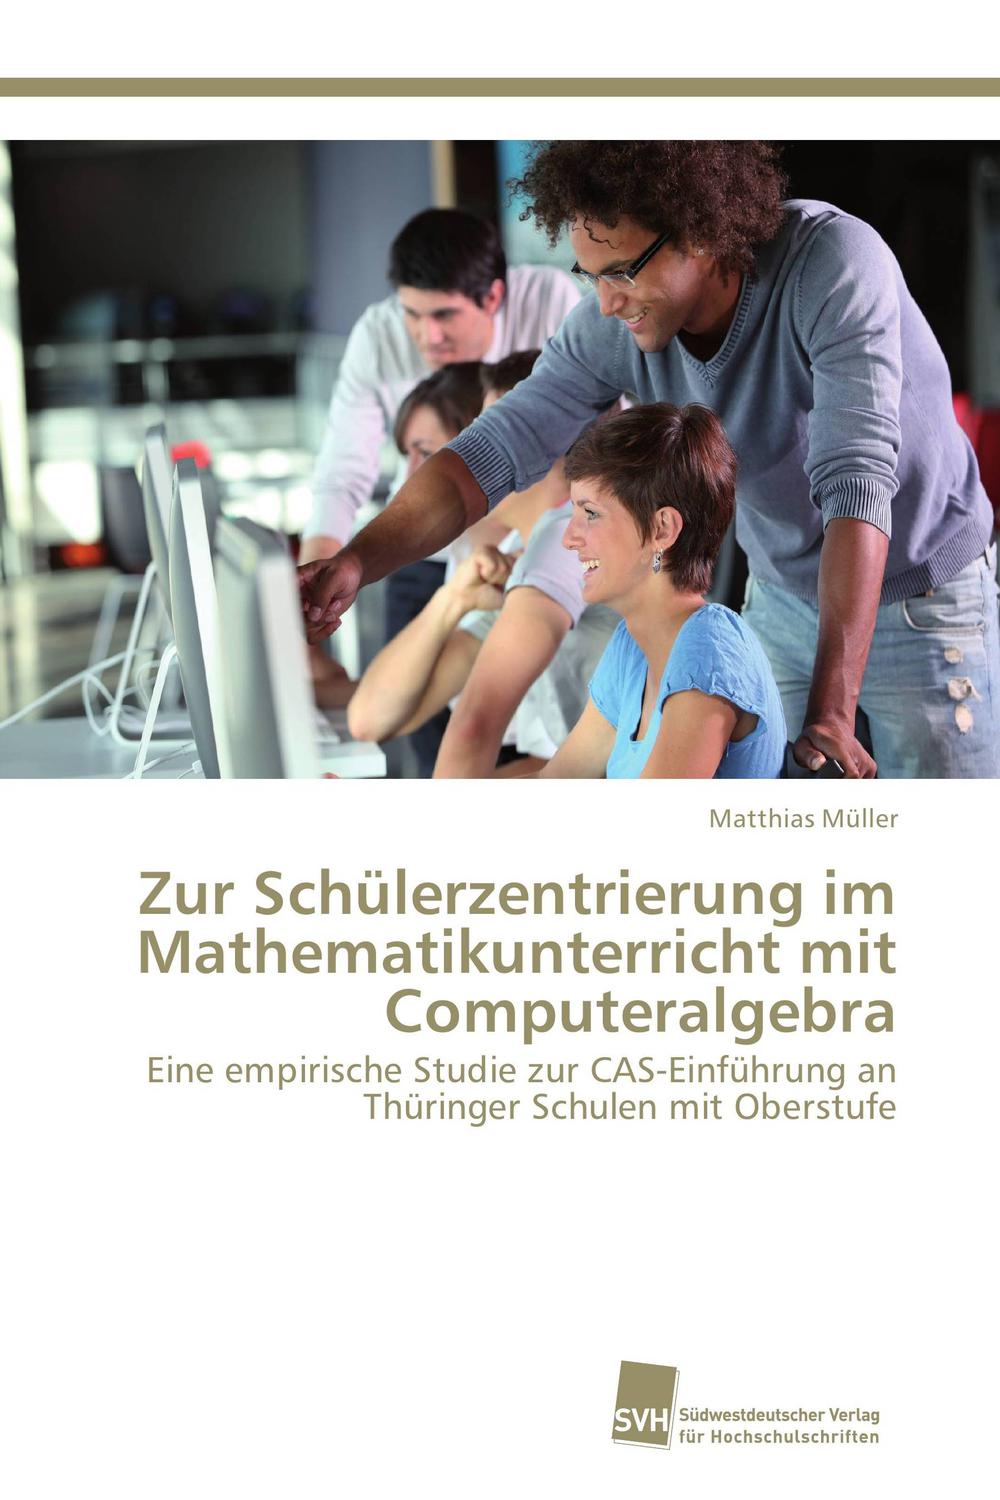 Zur Schülerzentrierung im Mathematikunterricht mit Computeralgebra - Matthias Müller